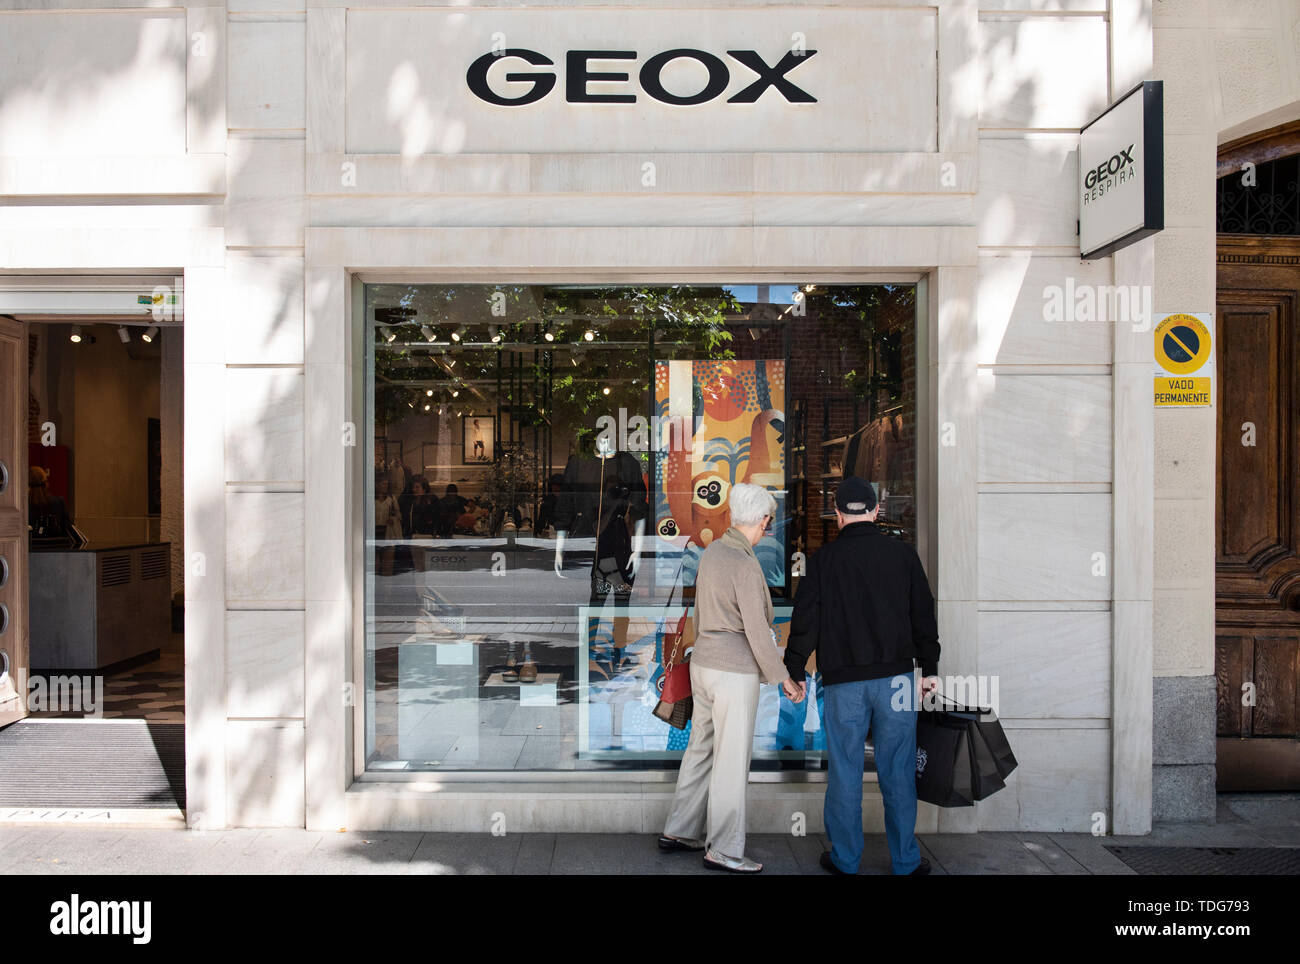 Italian footwear Geox store seen in Spain Photo - Alamy